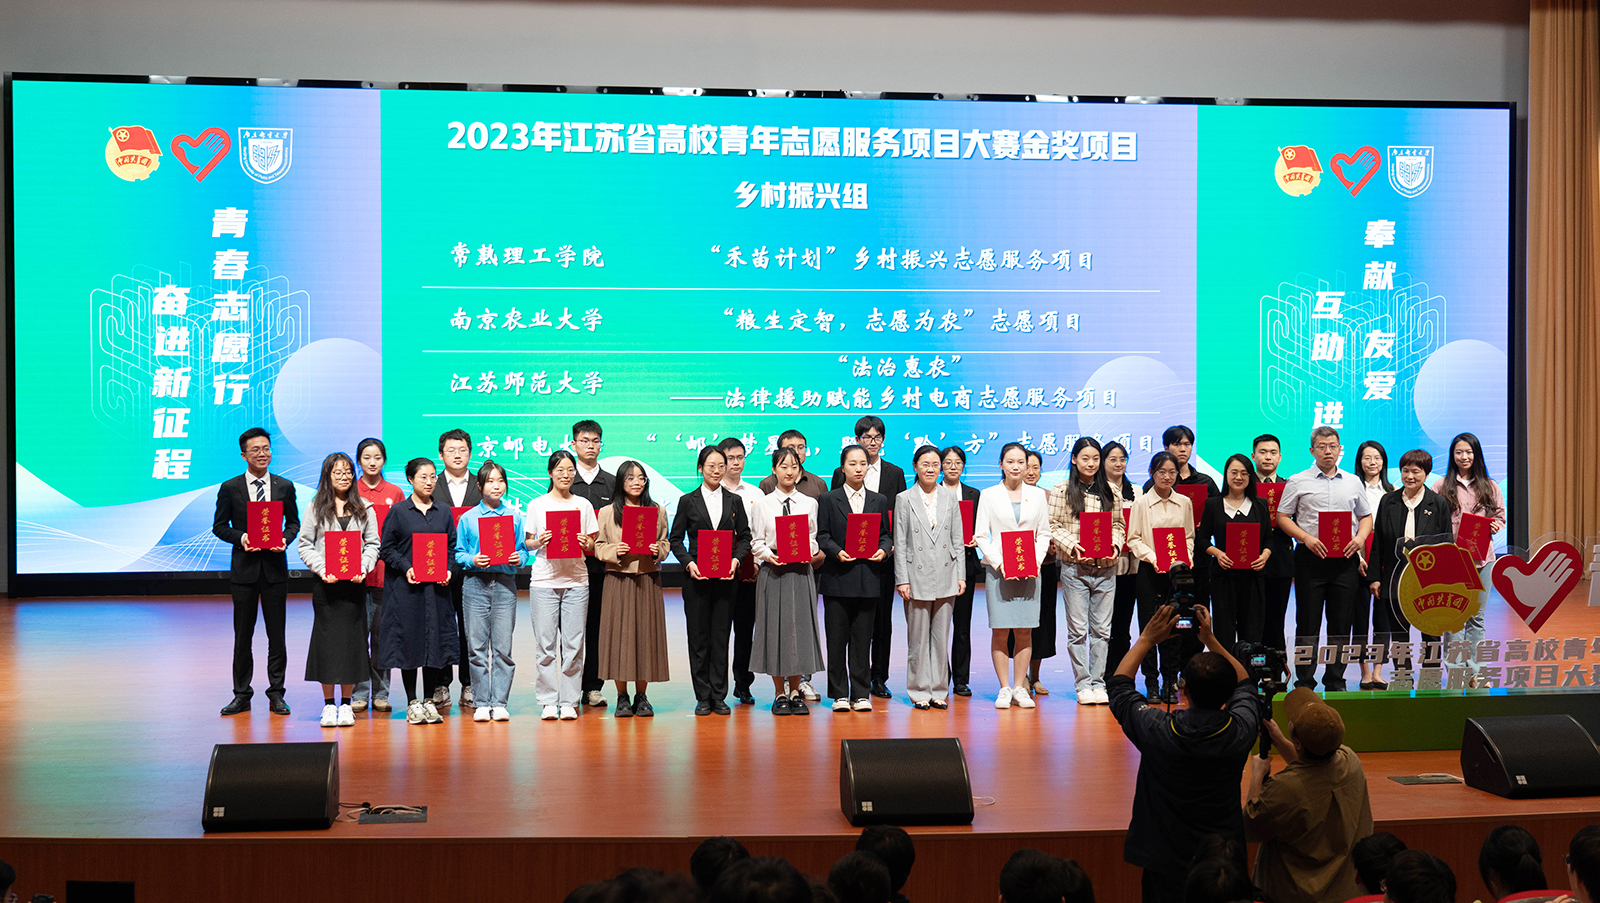 我校获江苏省高校青年志愿服务项目大赛金奖及优秀组织奖